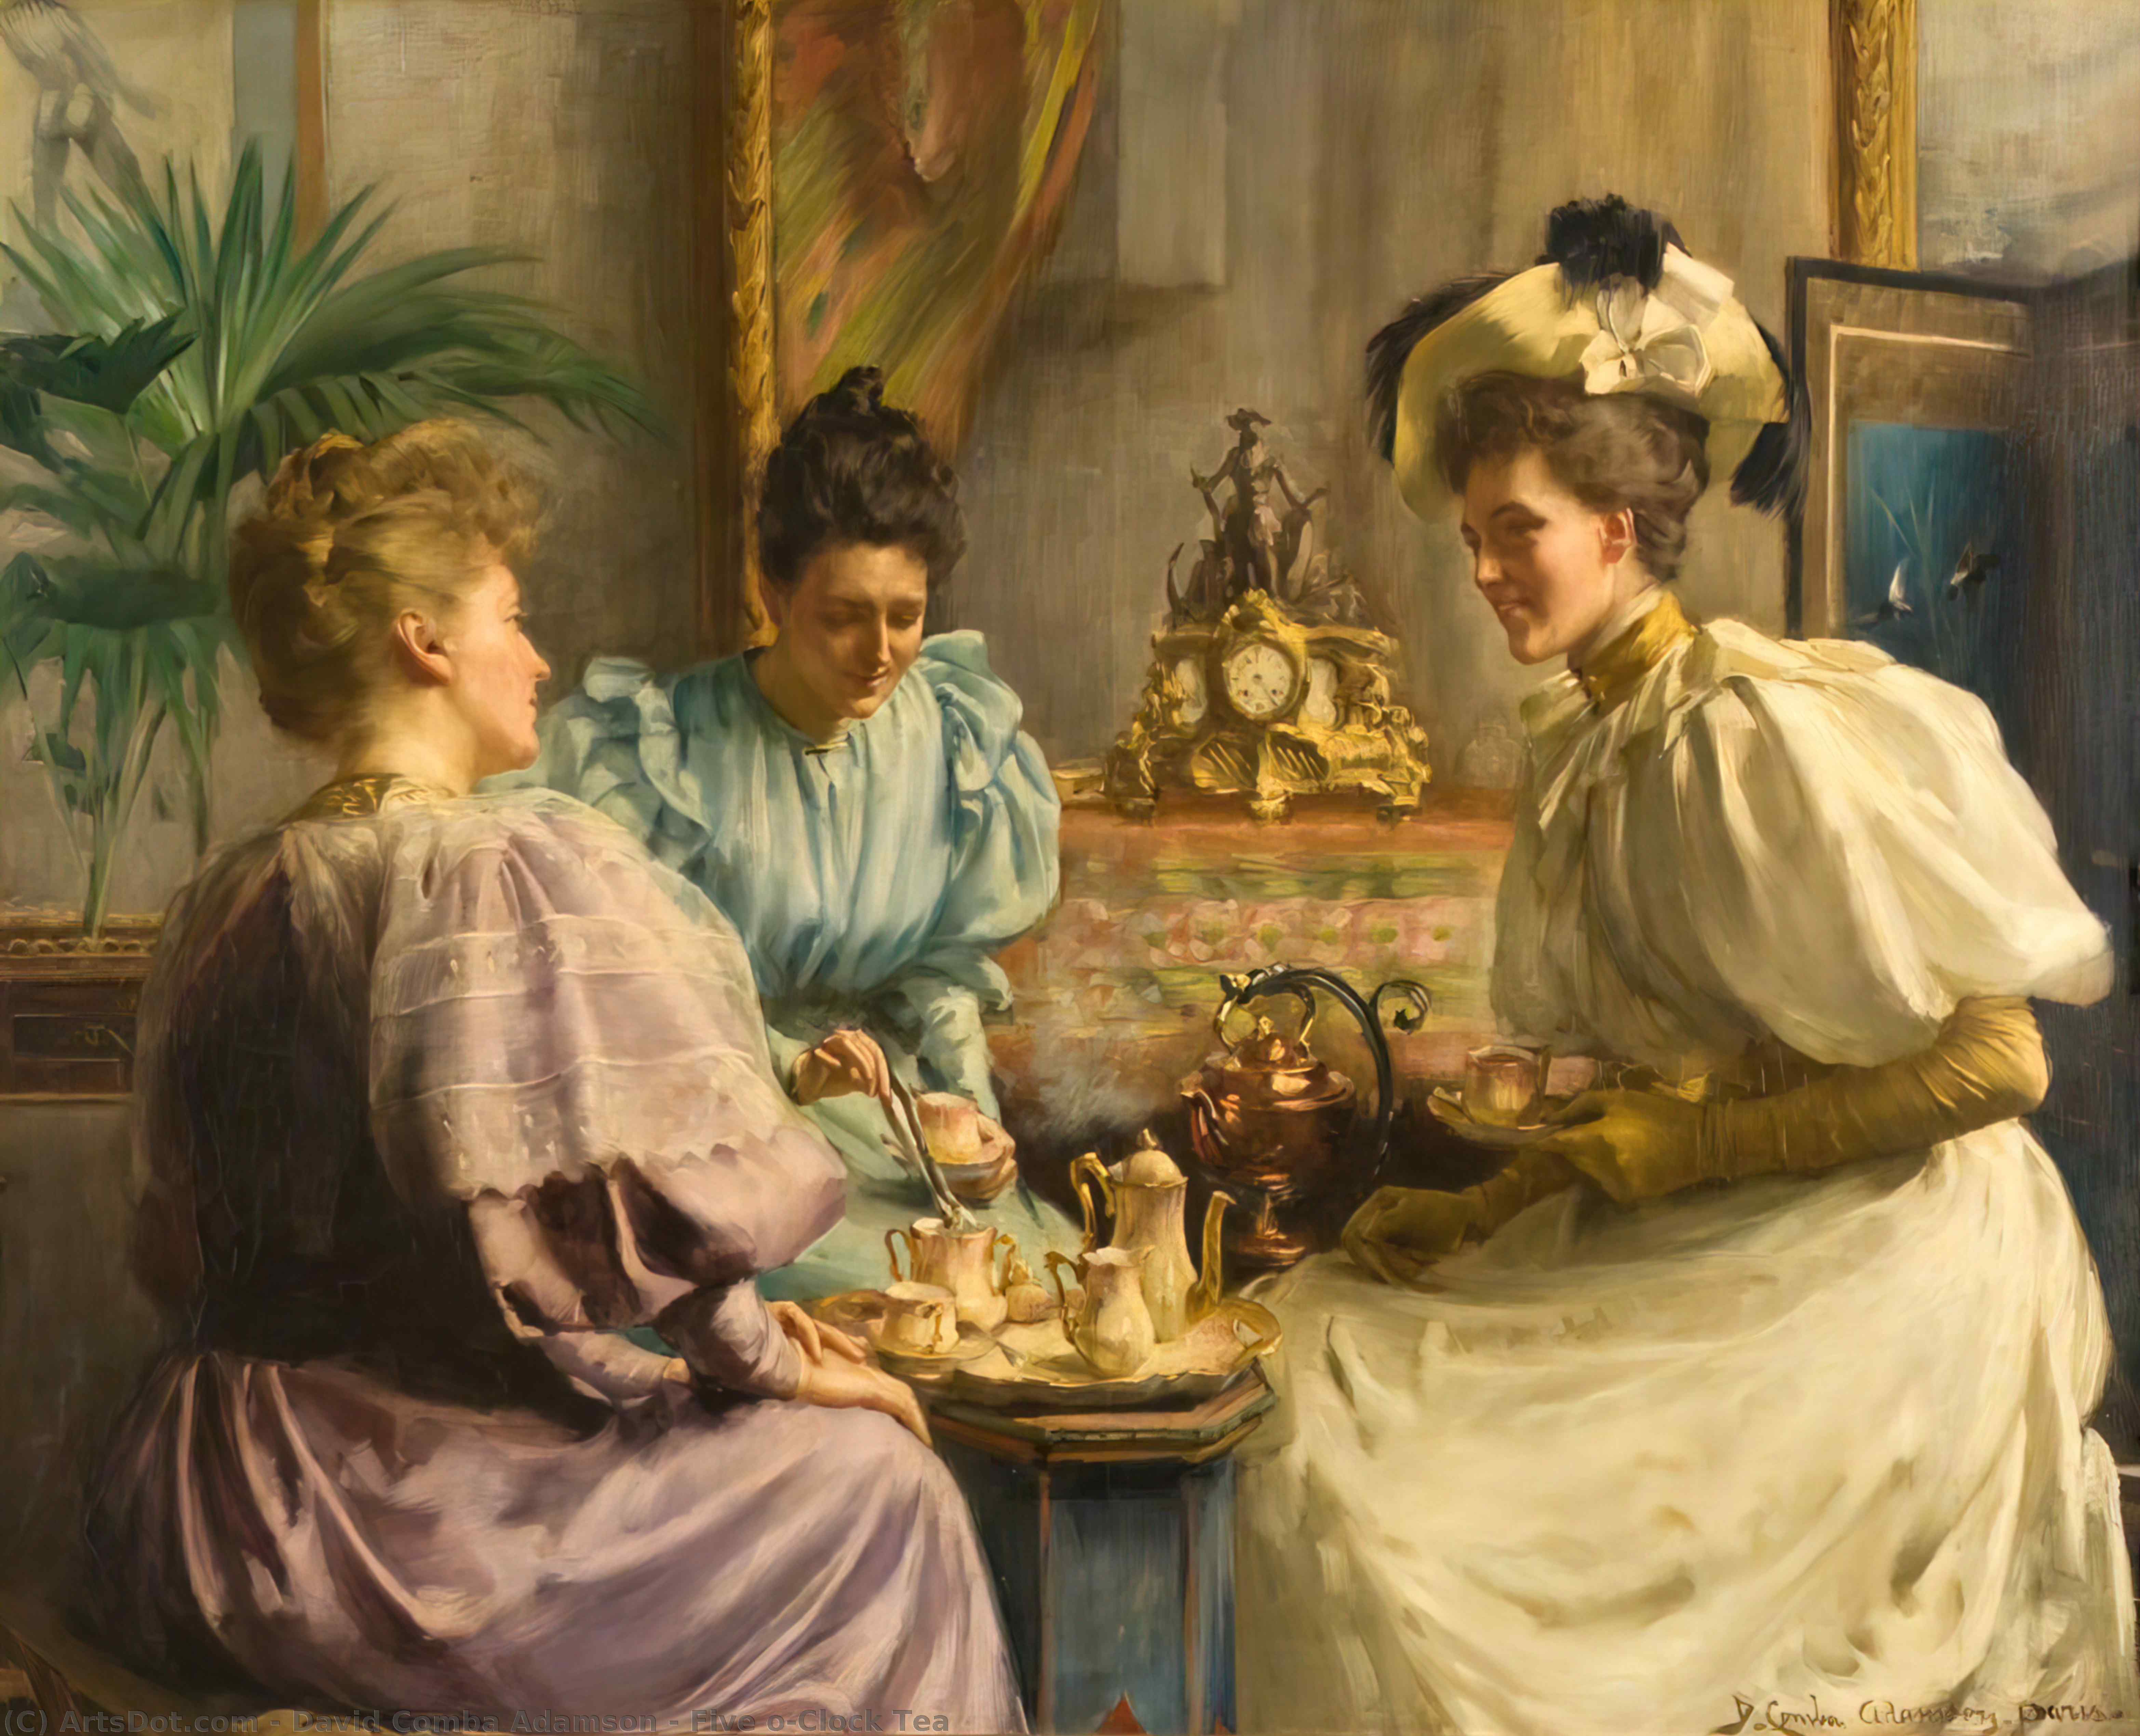 Манеры старинная. Five o Clock Tea чаепитие в Великобритании. Английское Викторианское чаепитие 19 век. Чаепитие Англия 19 век.